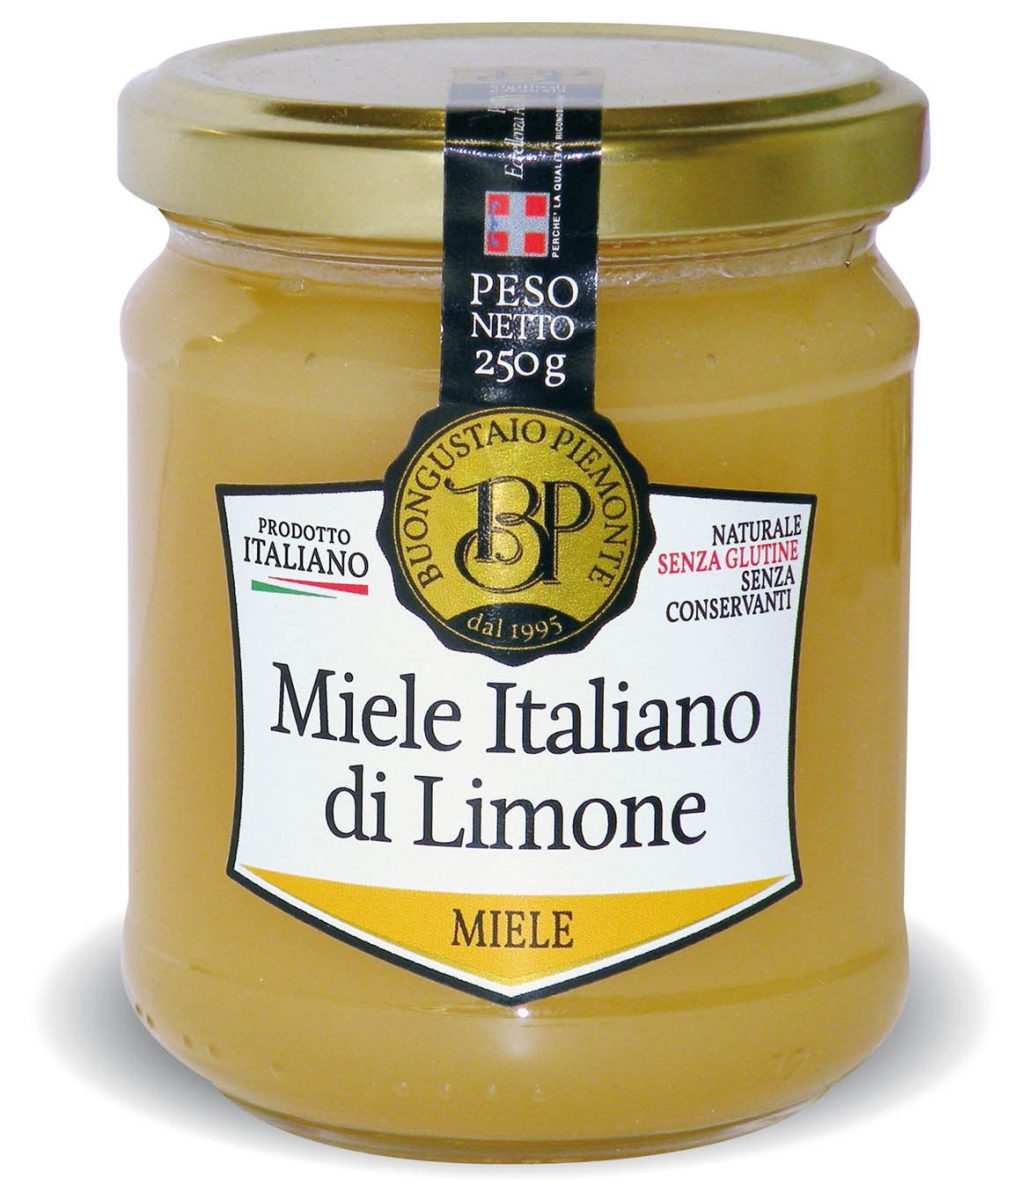 Miele Italiano di Limone